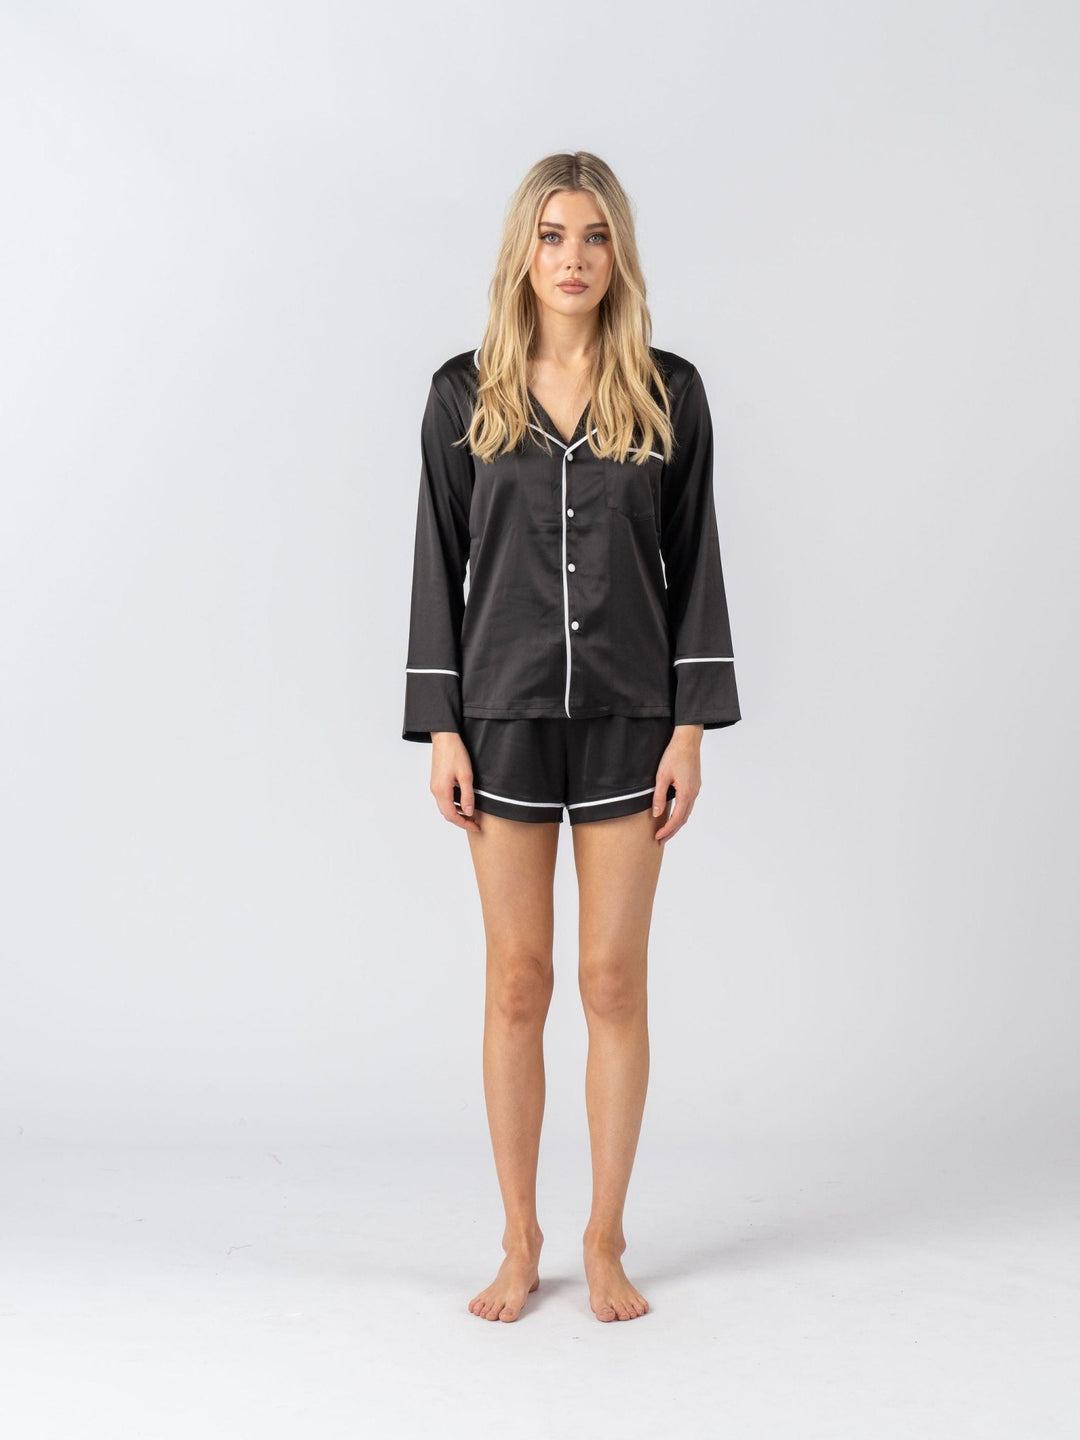 Satin Personalised Pyjama Set - Long Sleeve Black/White